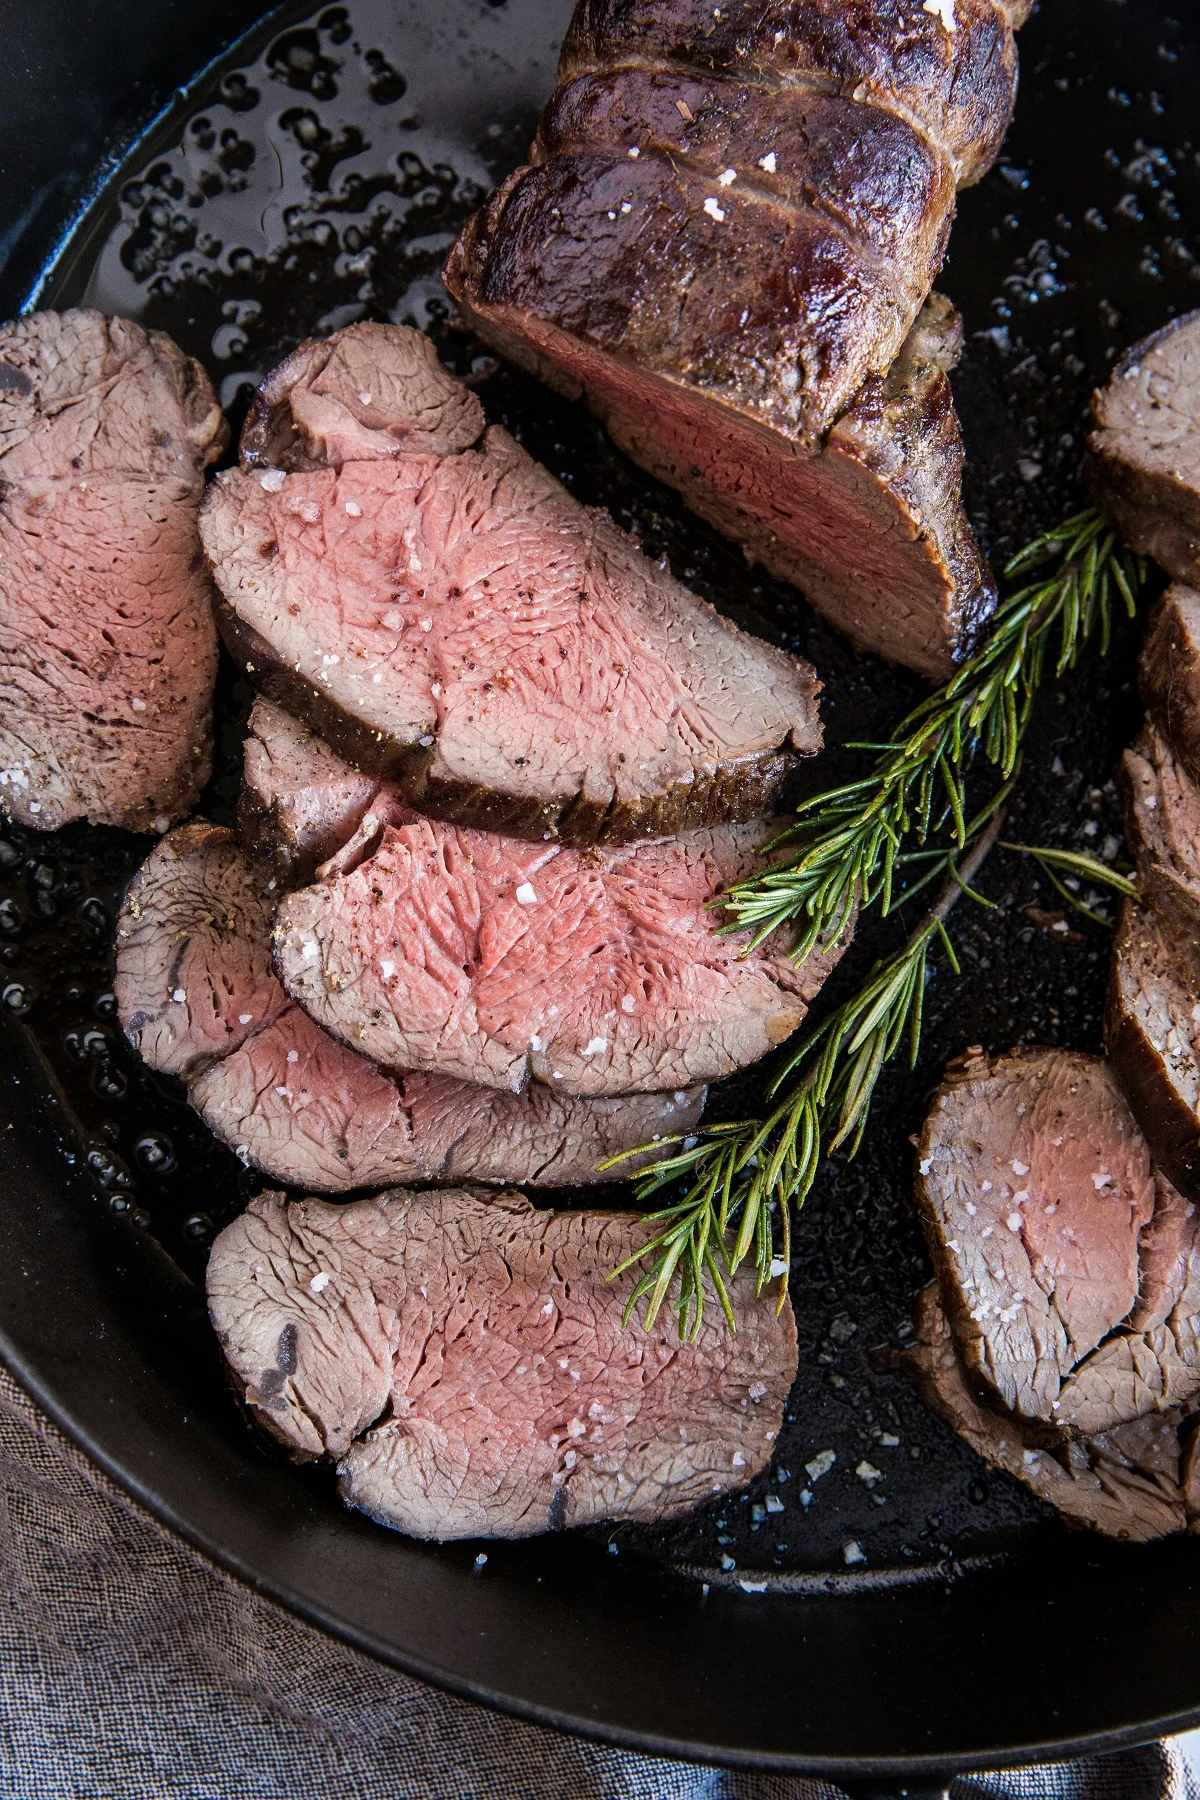 How to prepare Beef Tenderloin - an easy beef tenderloin recipe